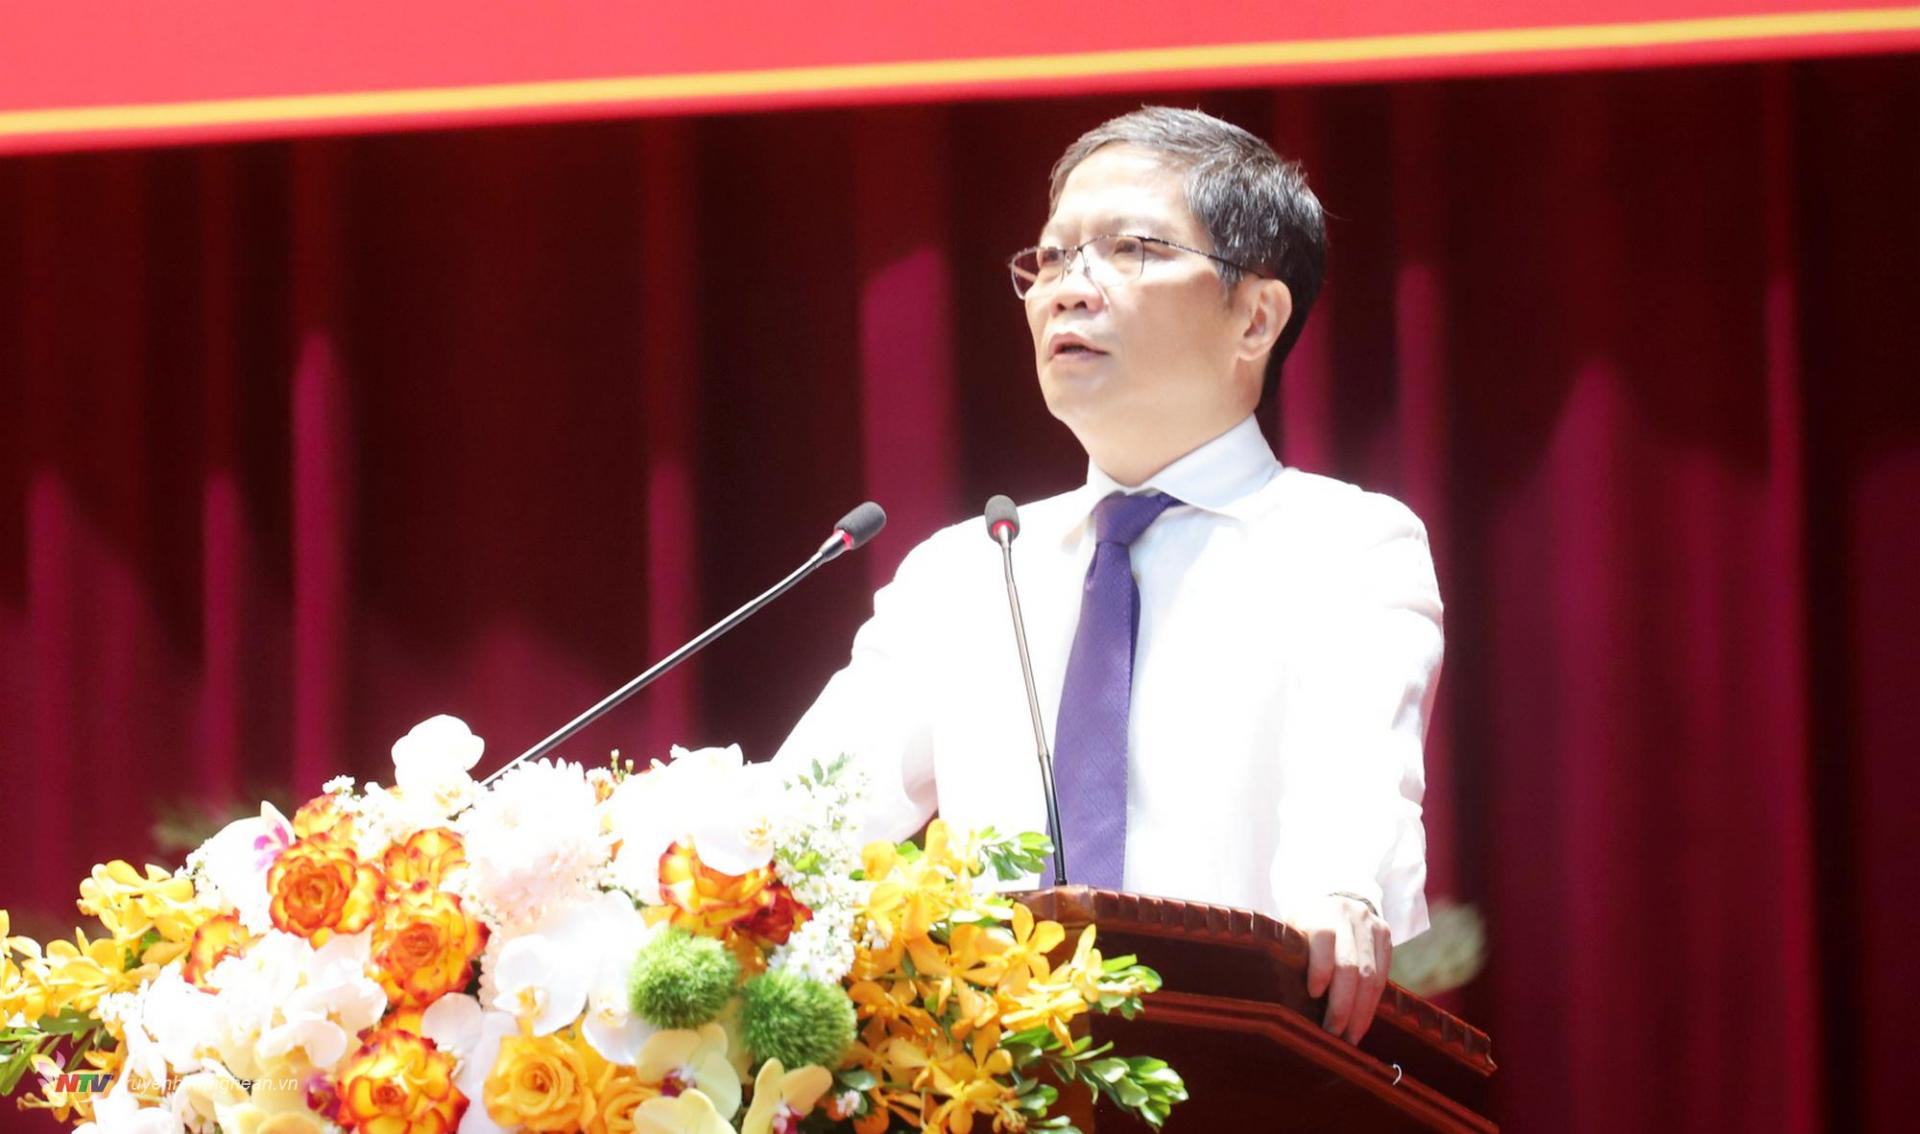 Đồng chí Trần Tuấn Anh, Ủy viên Bộ Chính trị, Trưởng ban Kinh tế Trung ương quán triệt Nghị quyết số 39-NQ/TW về xây dựng và phát triển tỉnh Nghệ An đến năm 2023, tầm nhìn đến năm 2045.